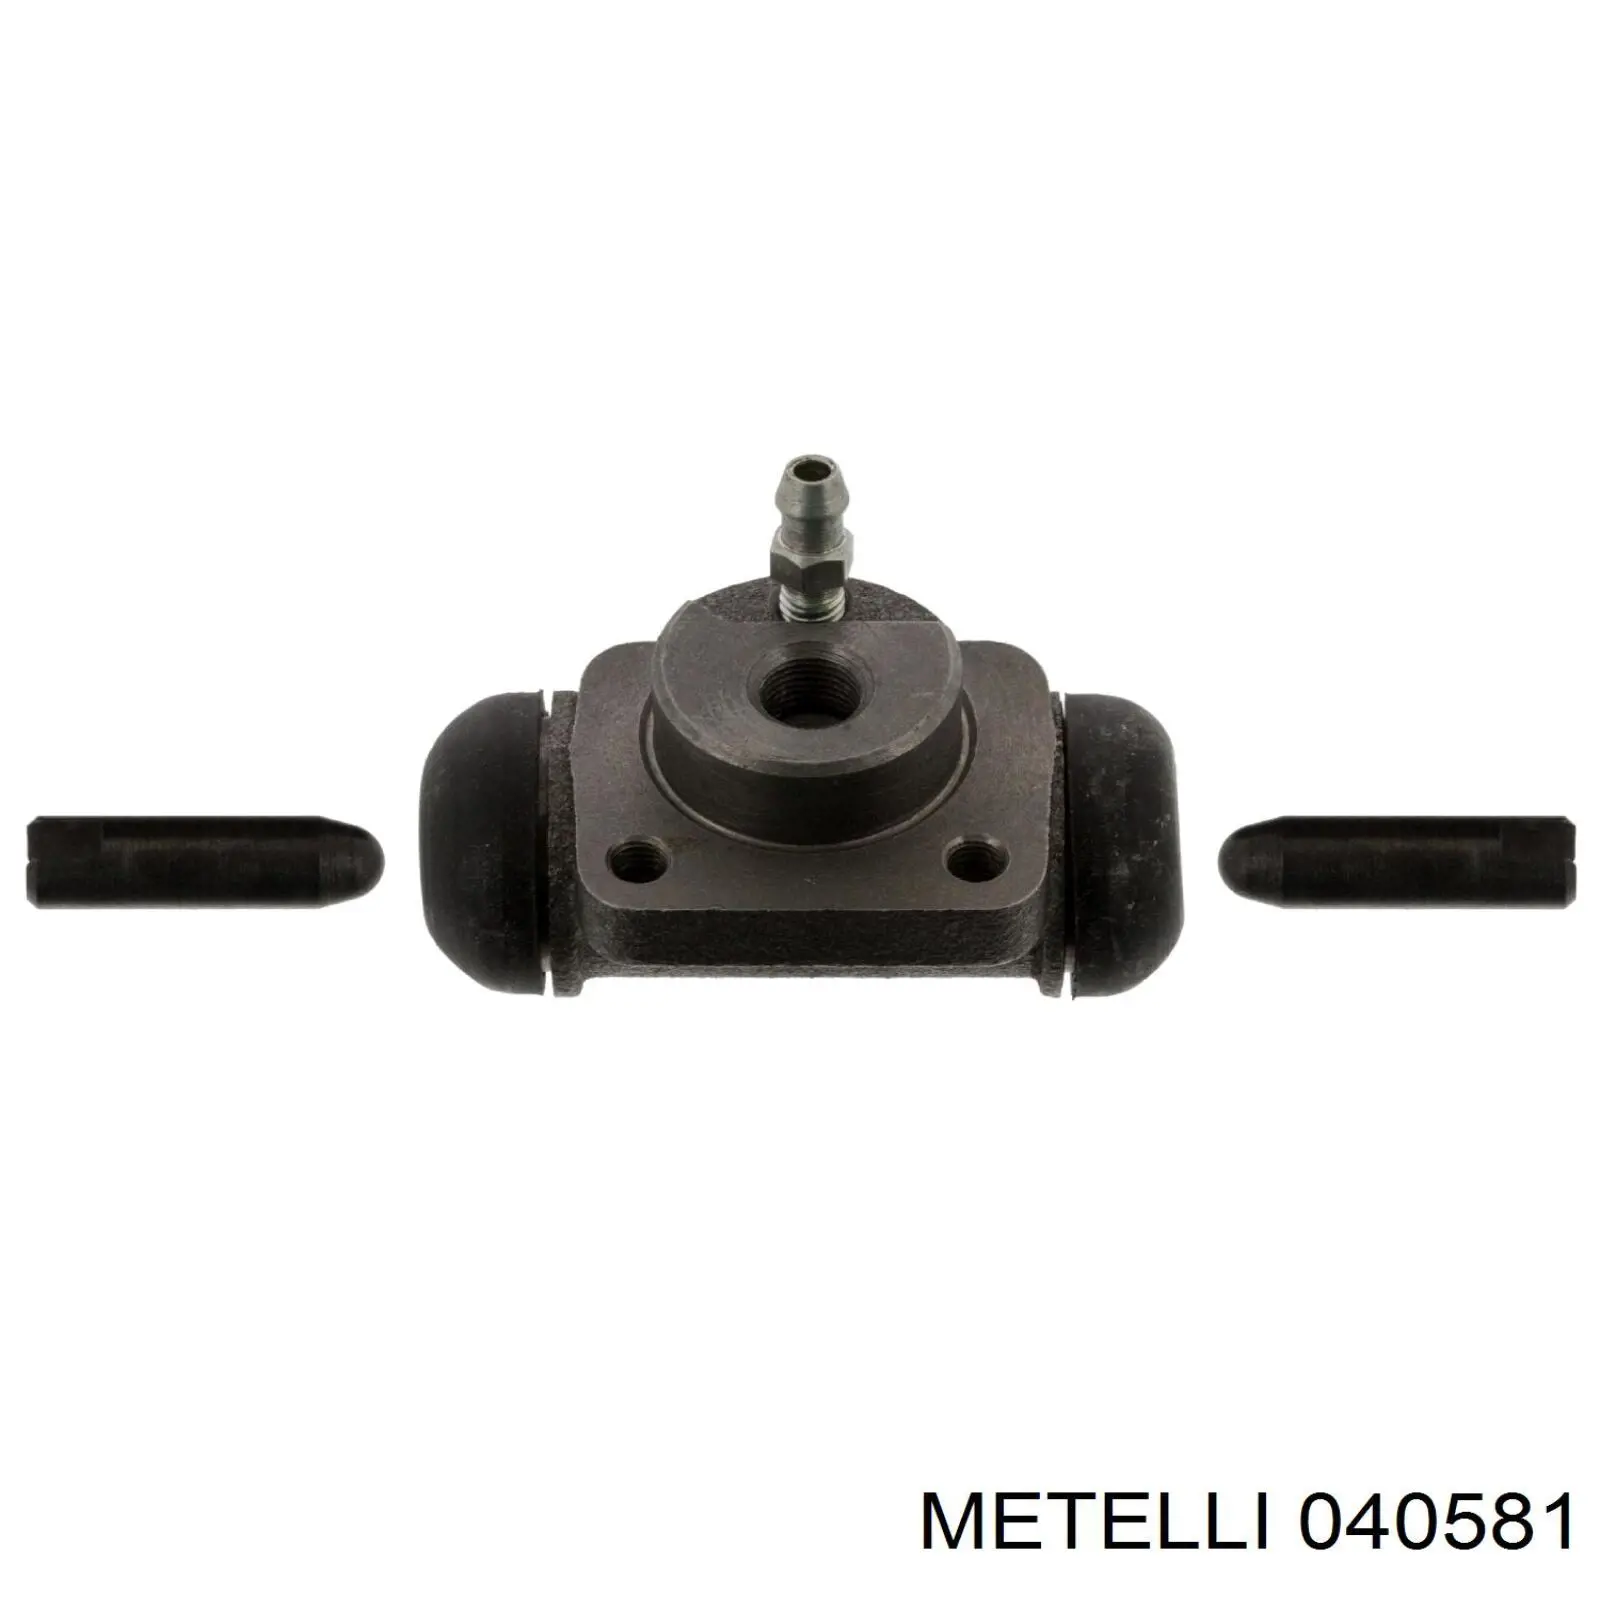 04-0581 Metelli цилиндр тормозной колесный рабочий задний